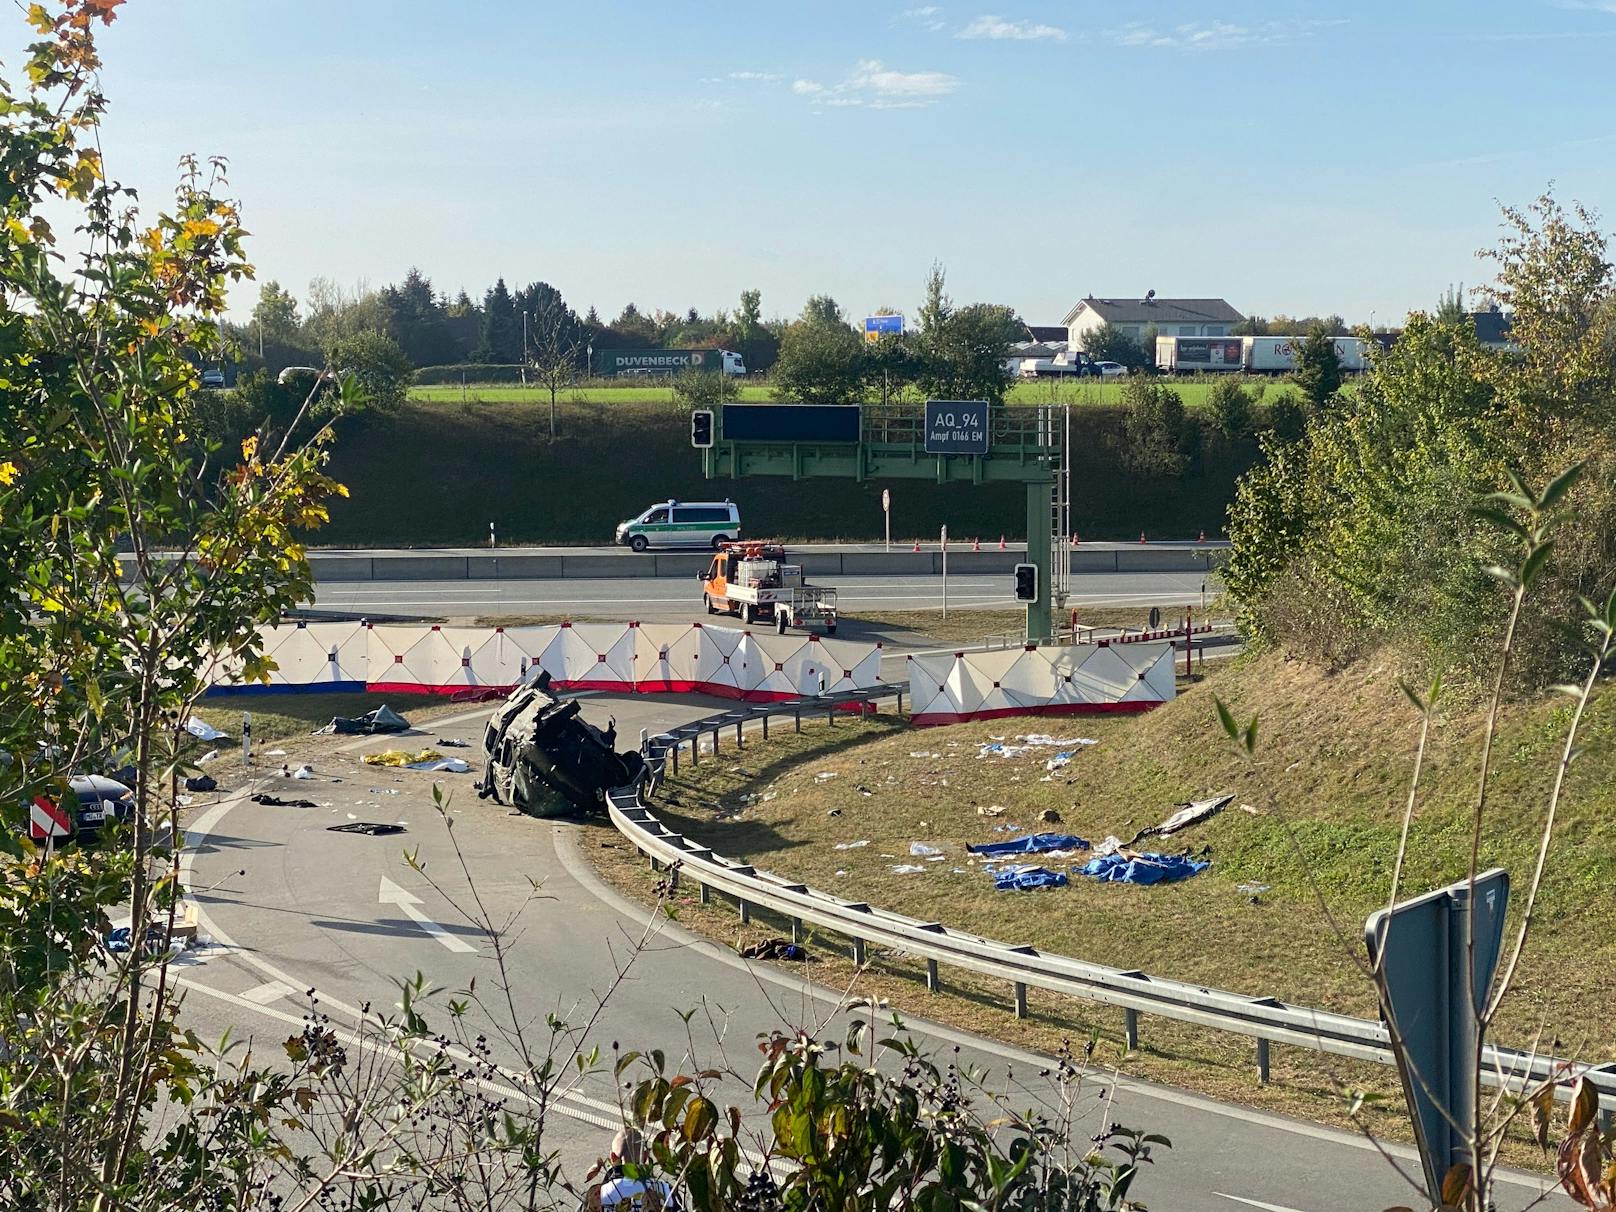 Ersten Informationen kamen bei dem Schlepper-Drama mindestens sieben Menschen ums Leben. Die Autobahn ist an der Unfallstelle in Richtung München komplett gesperrt.